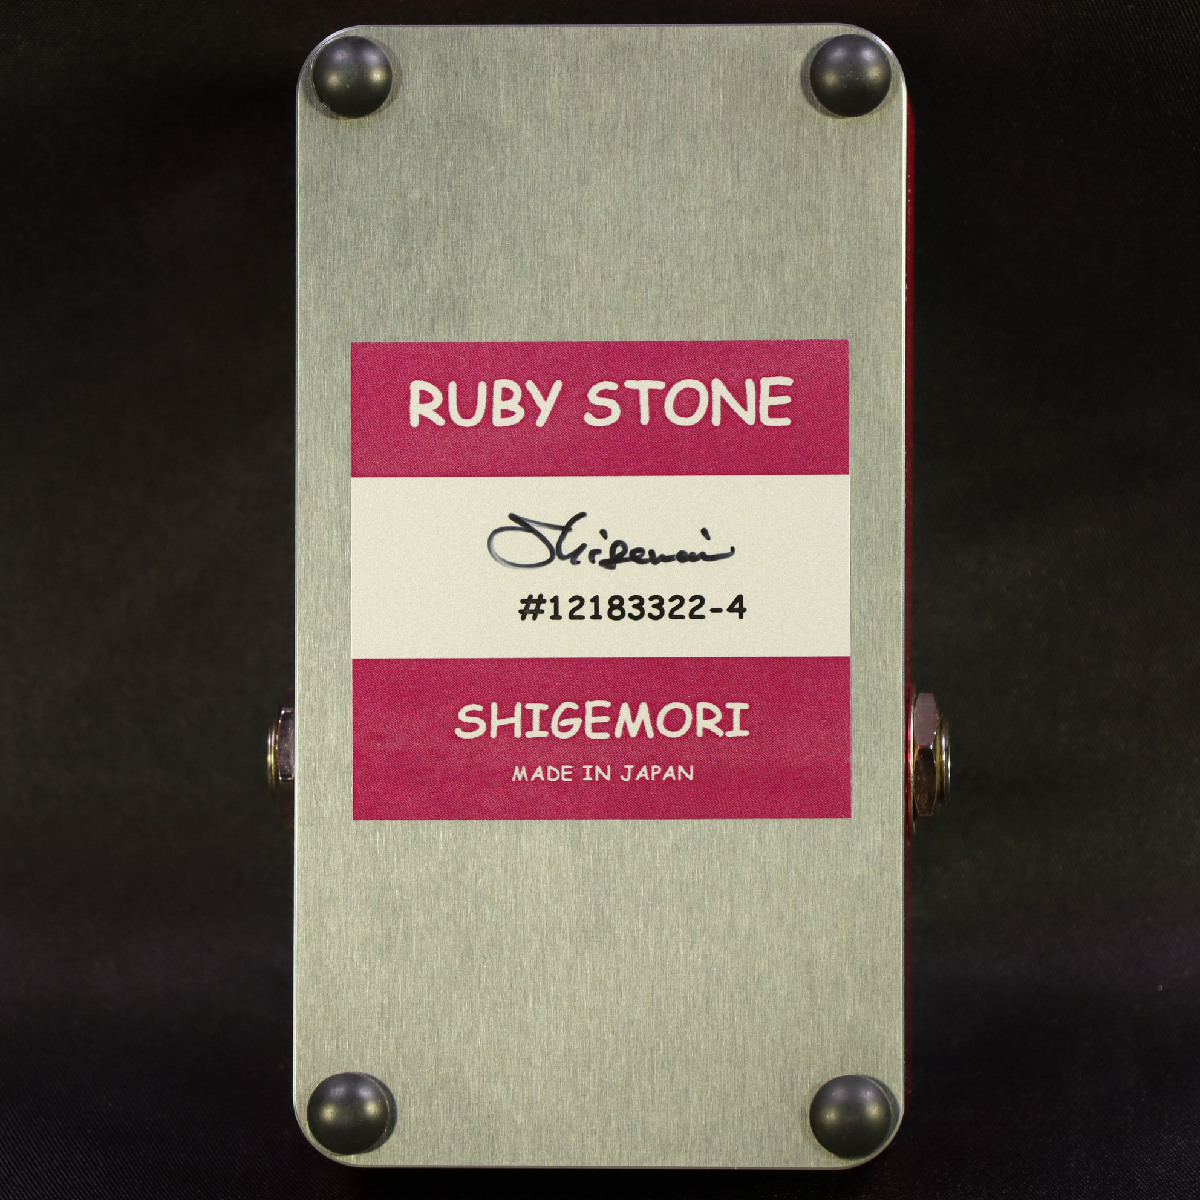 新商品 Shigemori 最高の品質の Ruby Stone オーバードライブ ギター